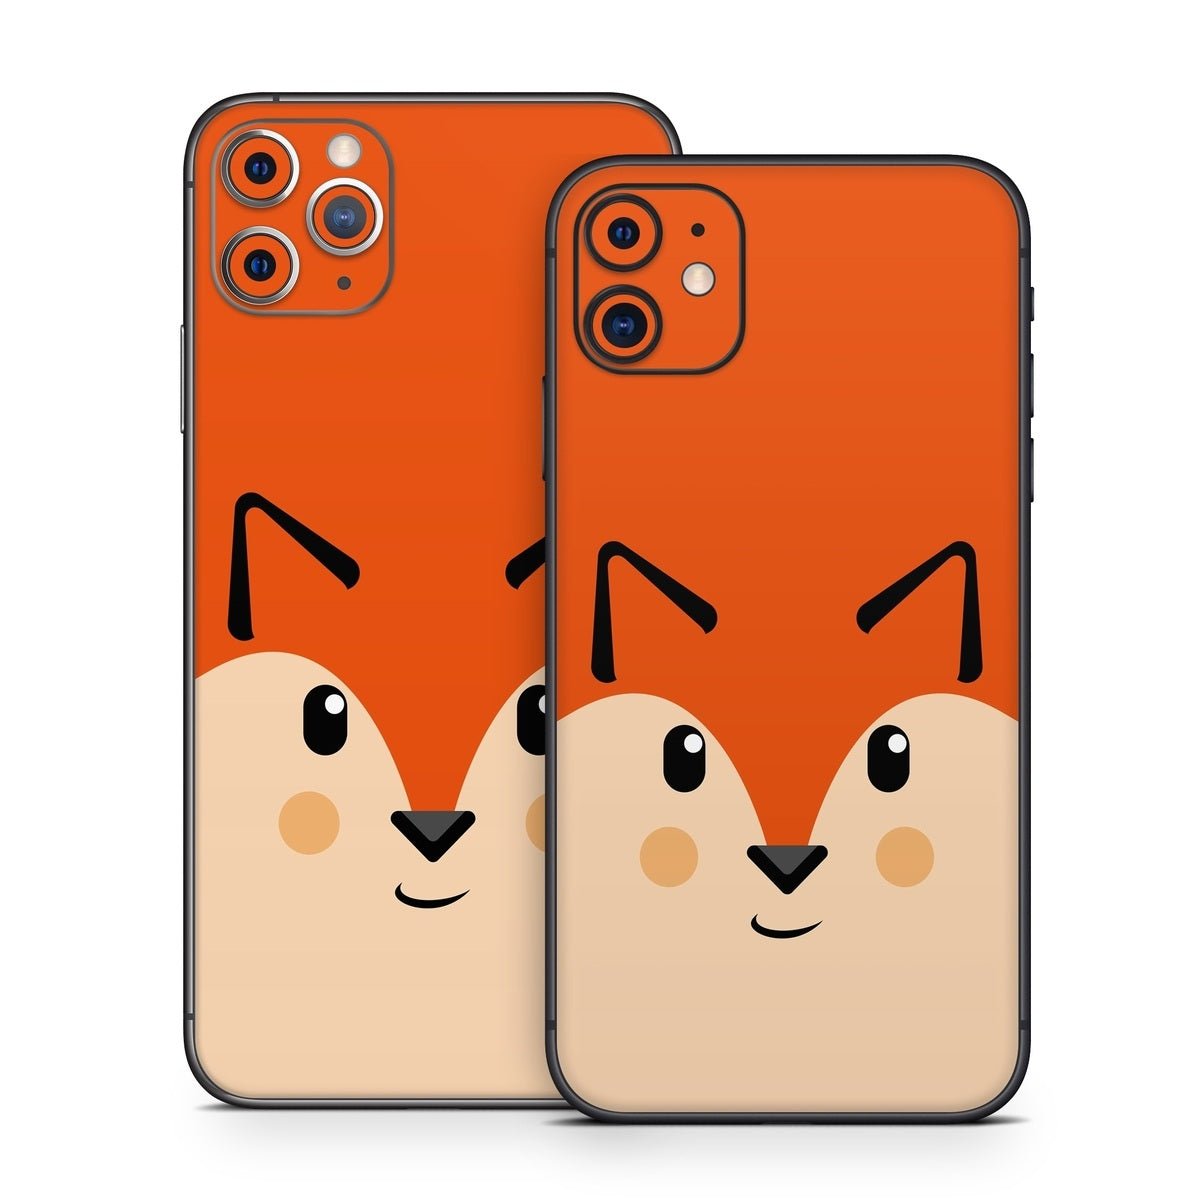 Autumn the Fox - Apple iPhone 11 Skin - The Zoo - DecalGirl